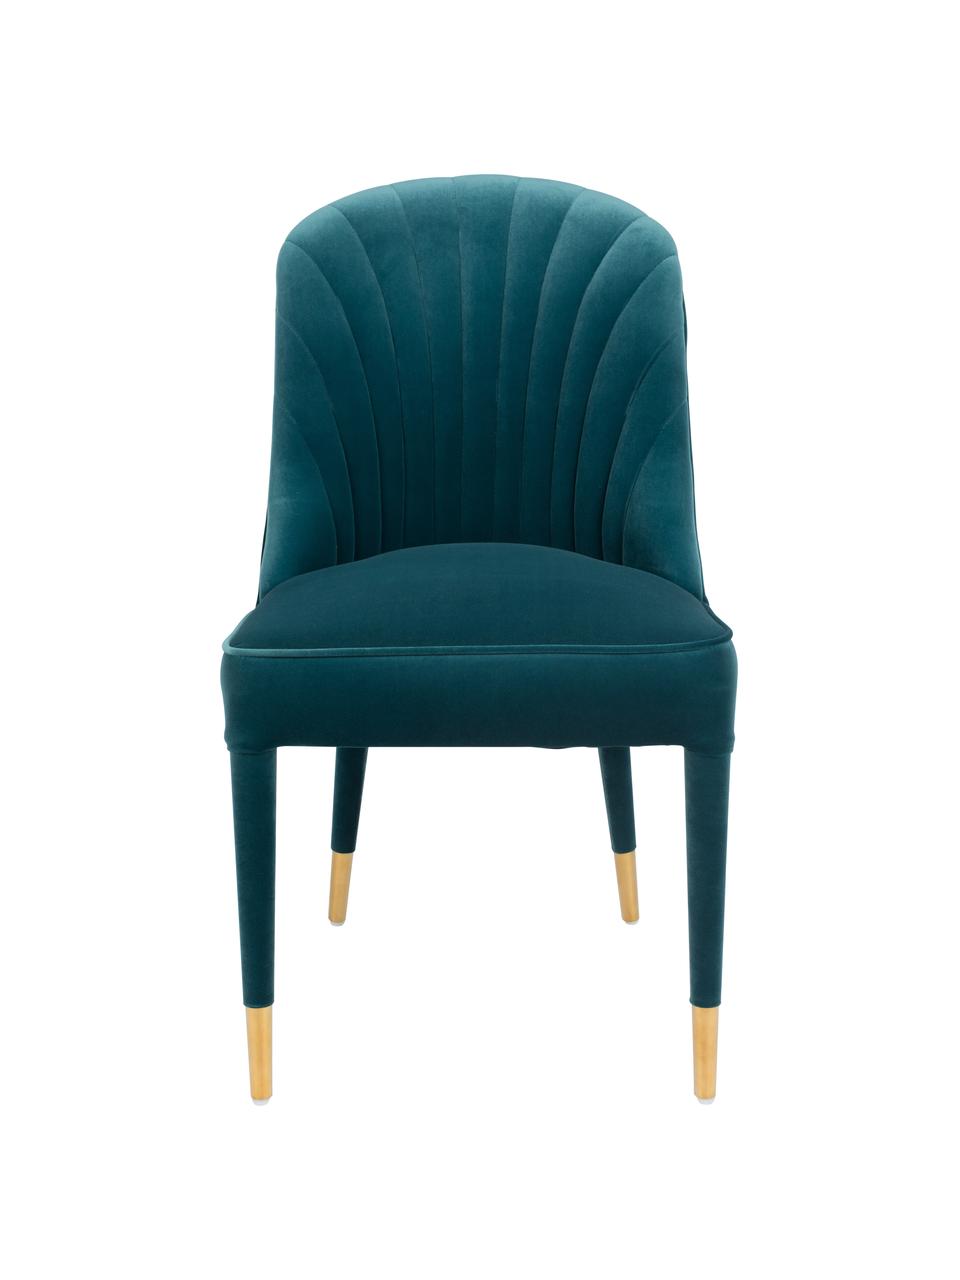 Blauer Samt-Stuhl Give Me More, Bezug: 100% Polyestersamt Der ho, Gestell: Schichtholz, Beine: Gummibaumholz, Füße: Stahl, pulverbeschichtet, Blau, Messingfarben, B 51 x T 61 cm